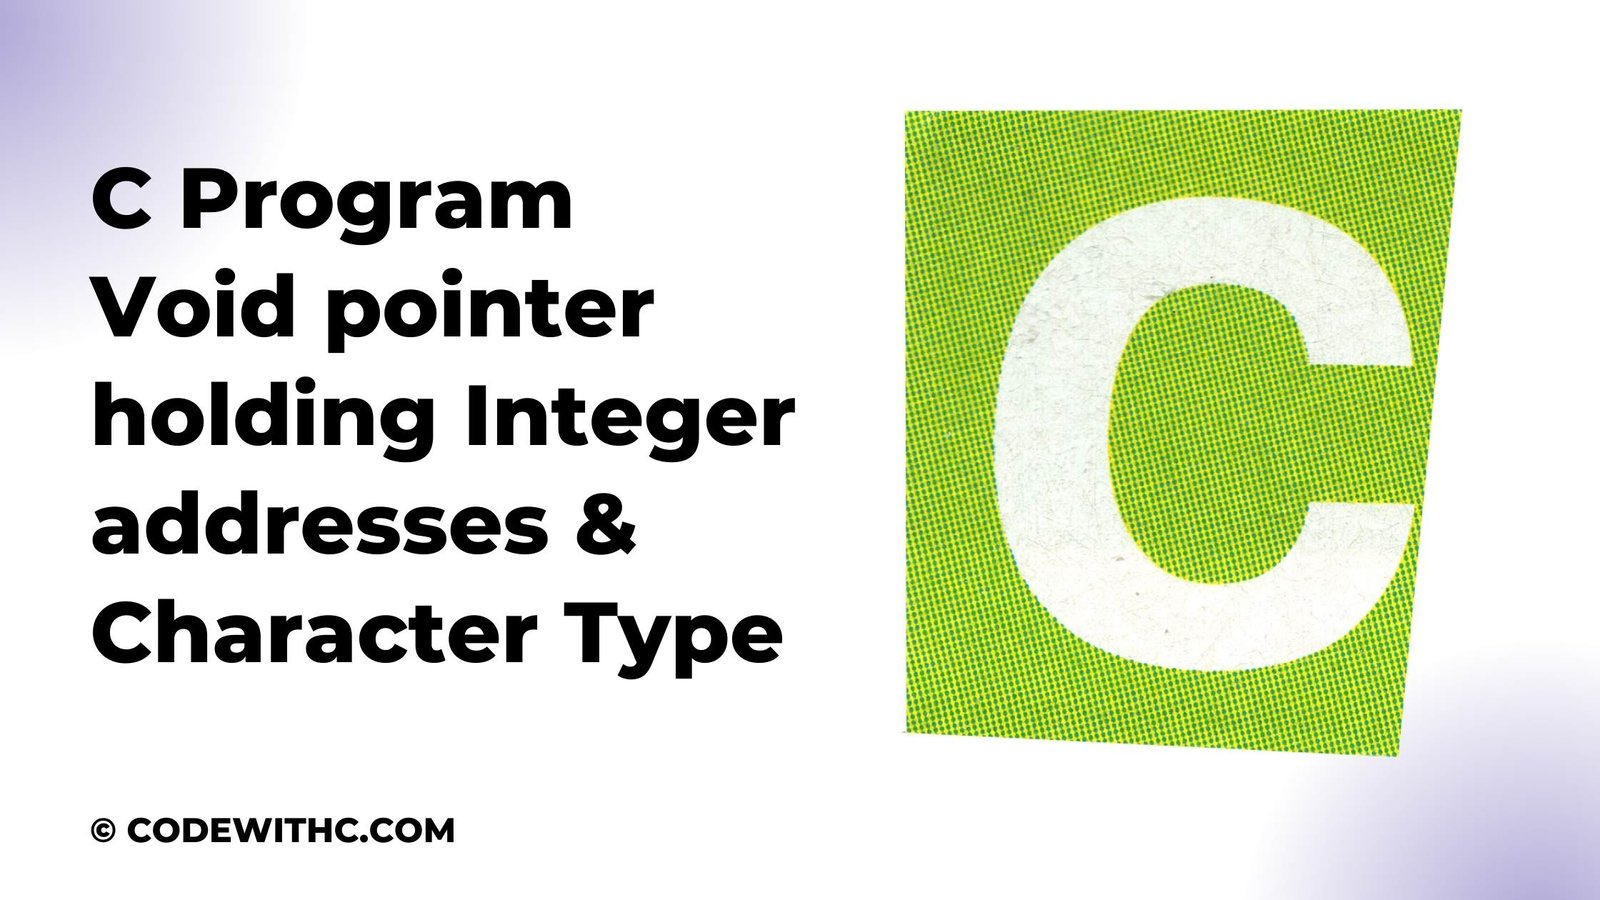 C Program Void pointer holding Integer addresses & Character Type